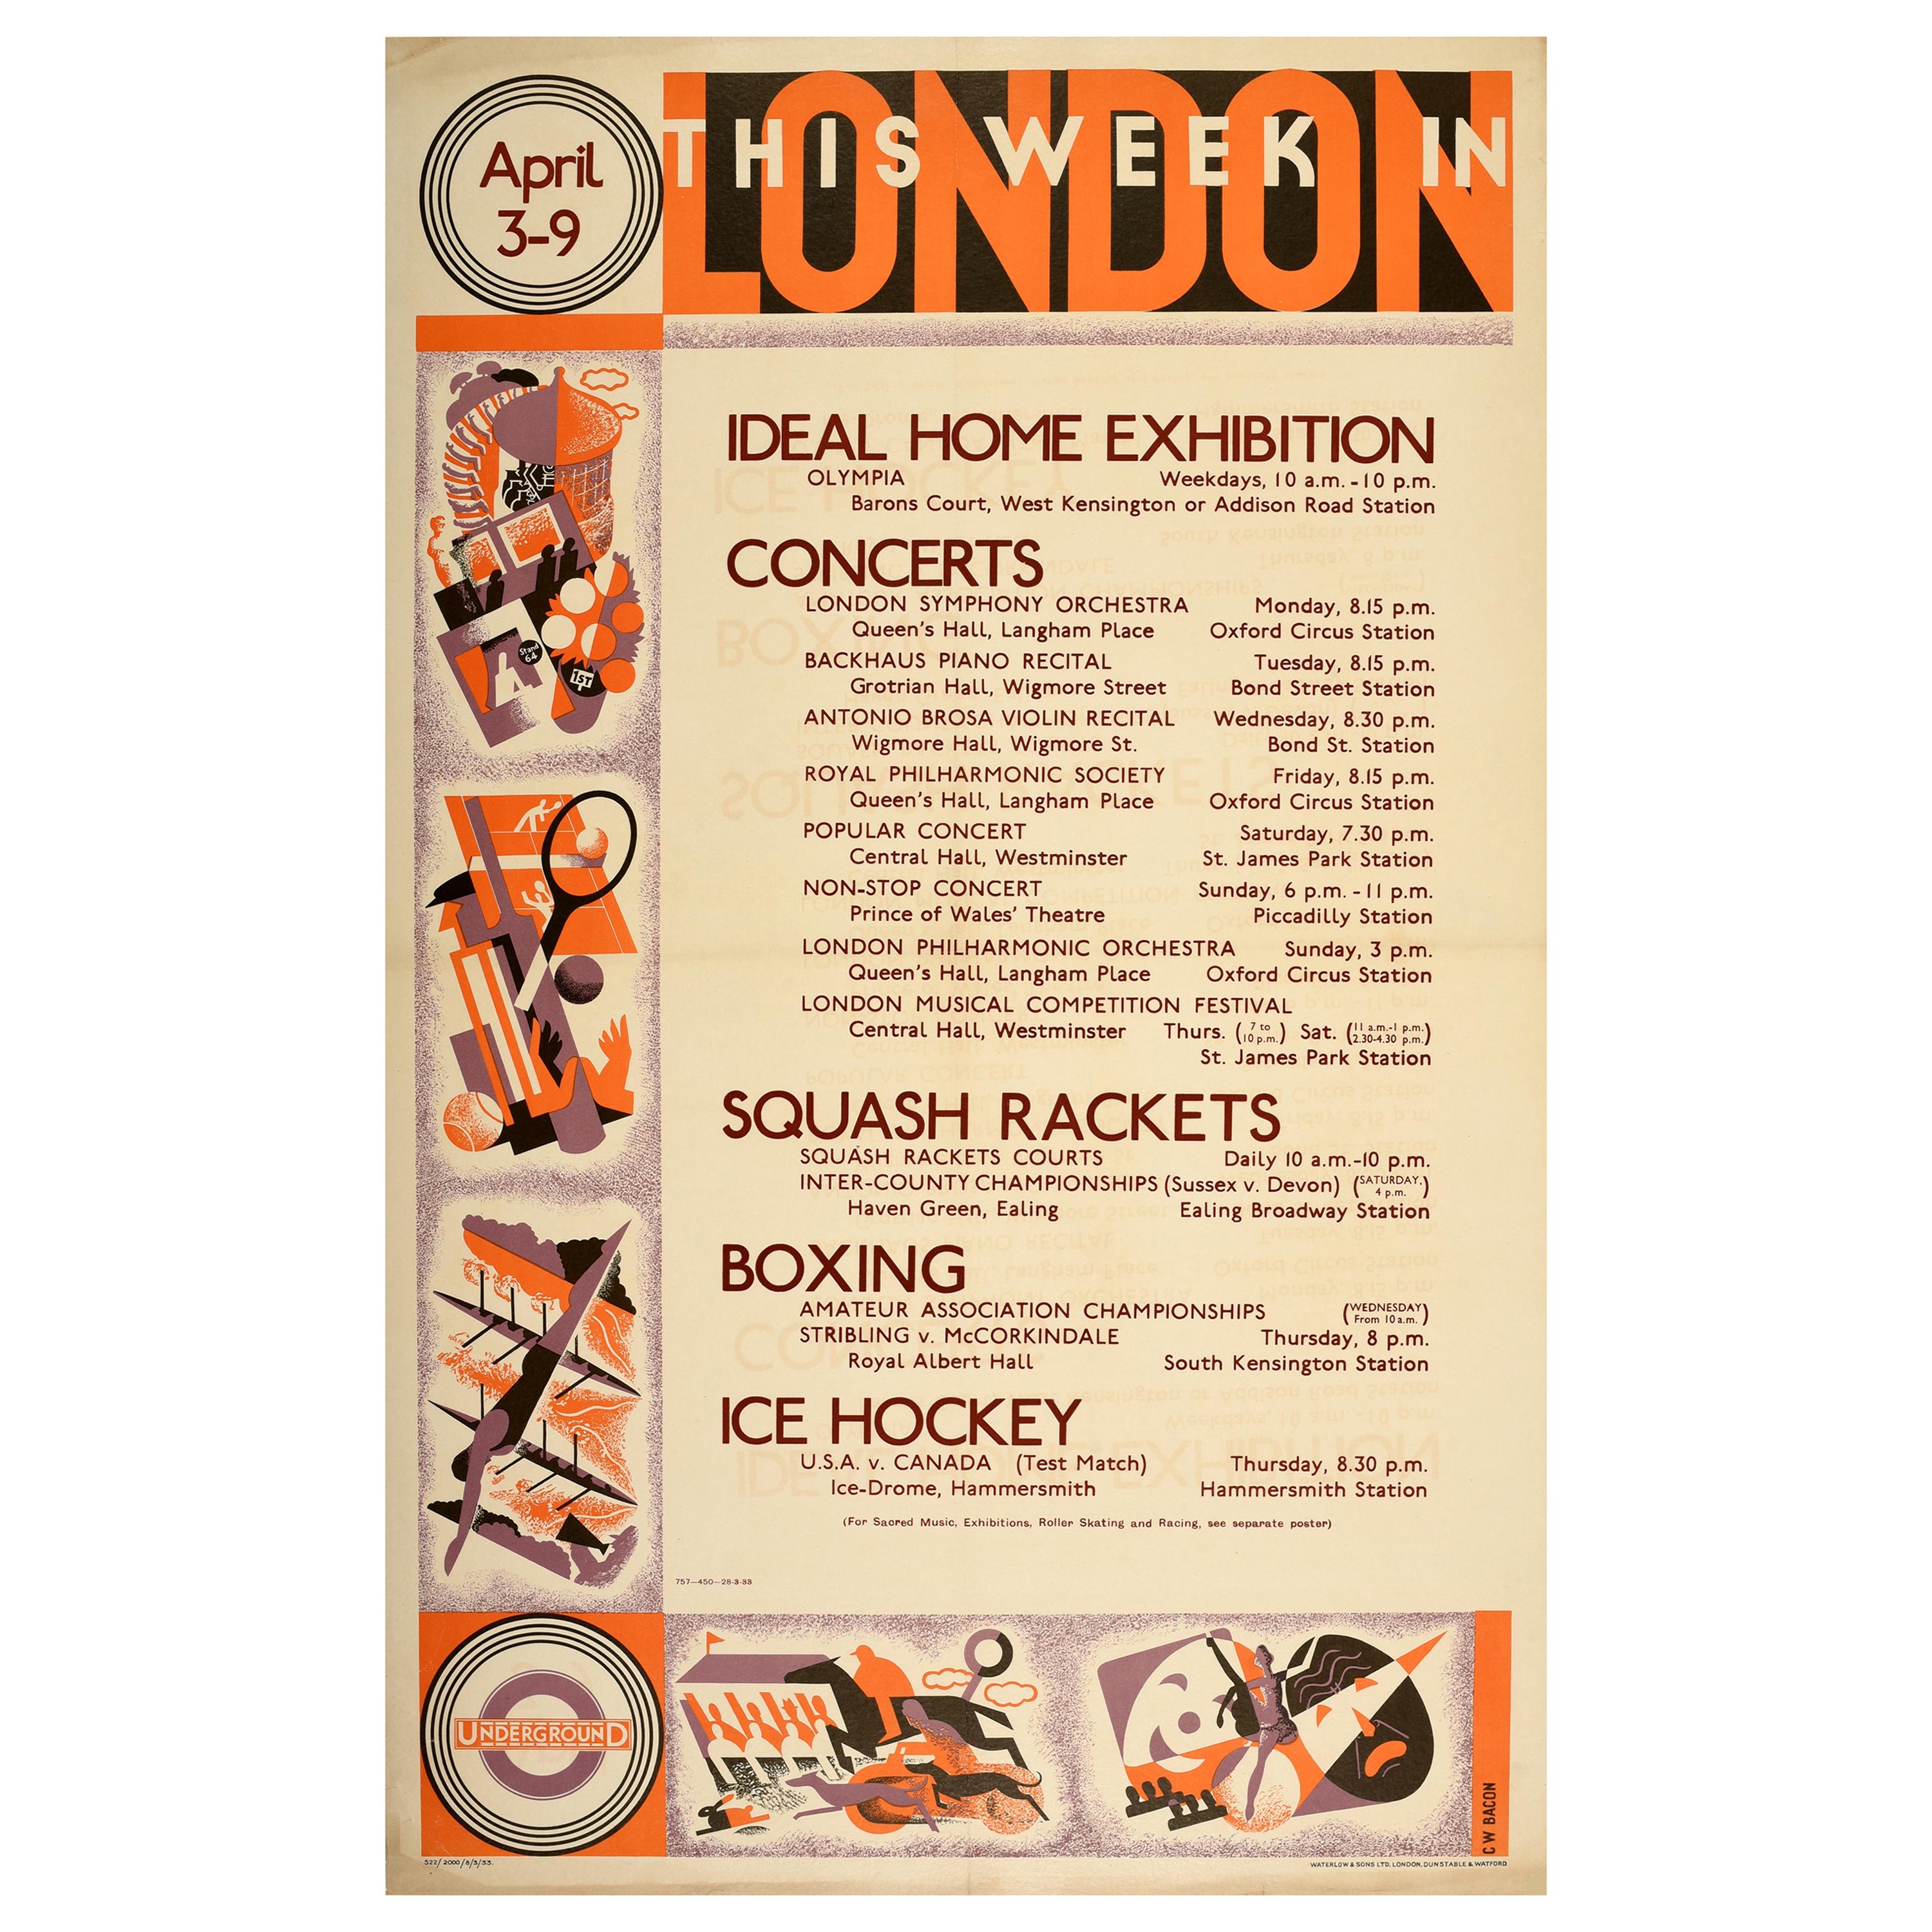 Affiche vintage originale du métro de Londres, Sport domestique, Boxe de boxe et hockey